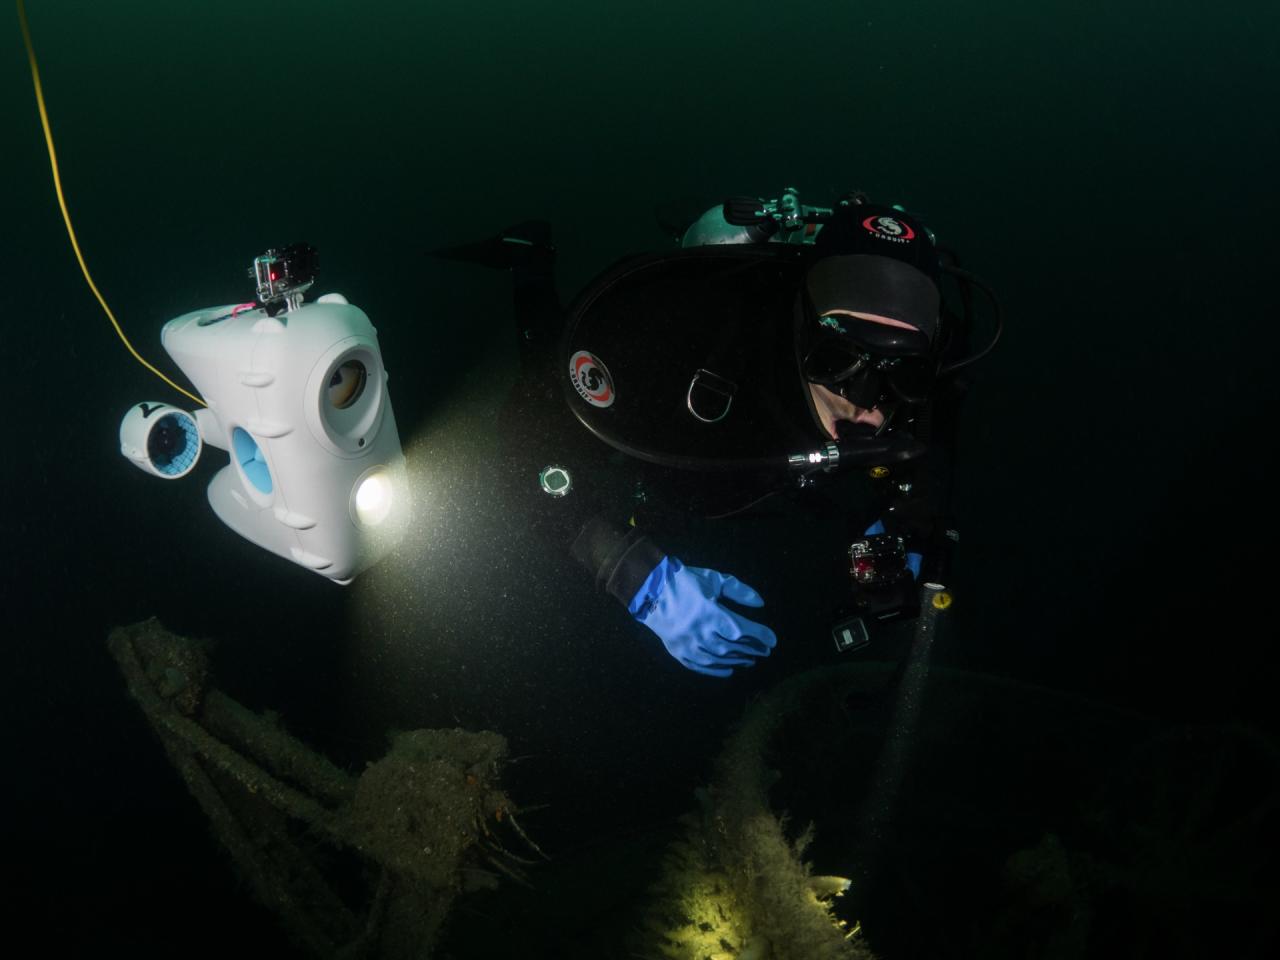 Digital dykkekompis lar deg bli med ned i dypet uten å selv bli våt